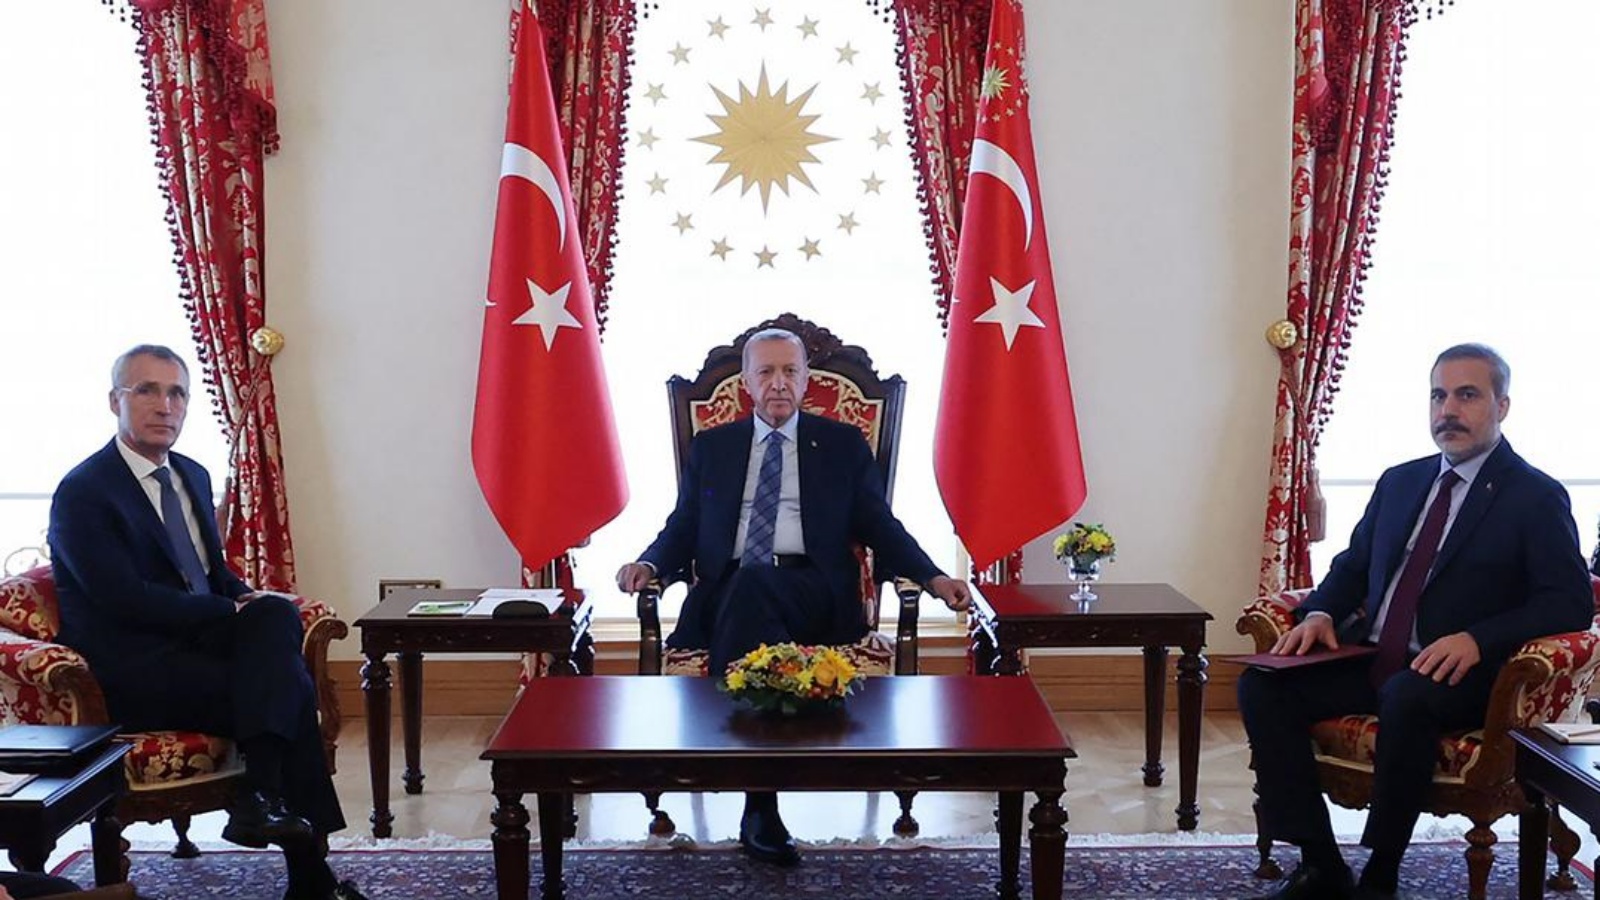 ستولتنبرغ (على اليسار) مع أردوغان (في الوسط) ووزير الخارجية المعين حديثًا هقان فيدان